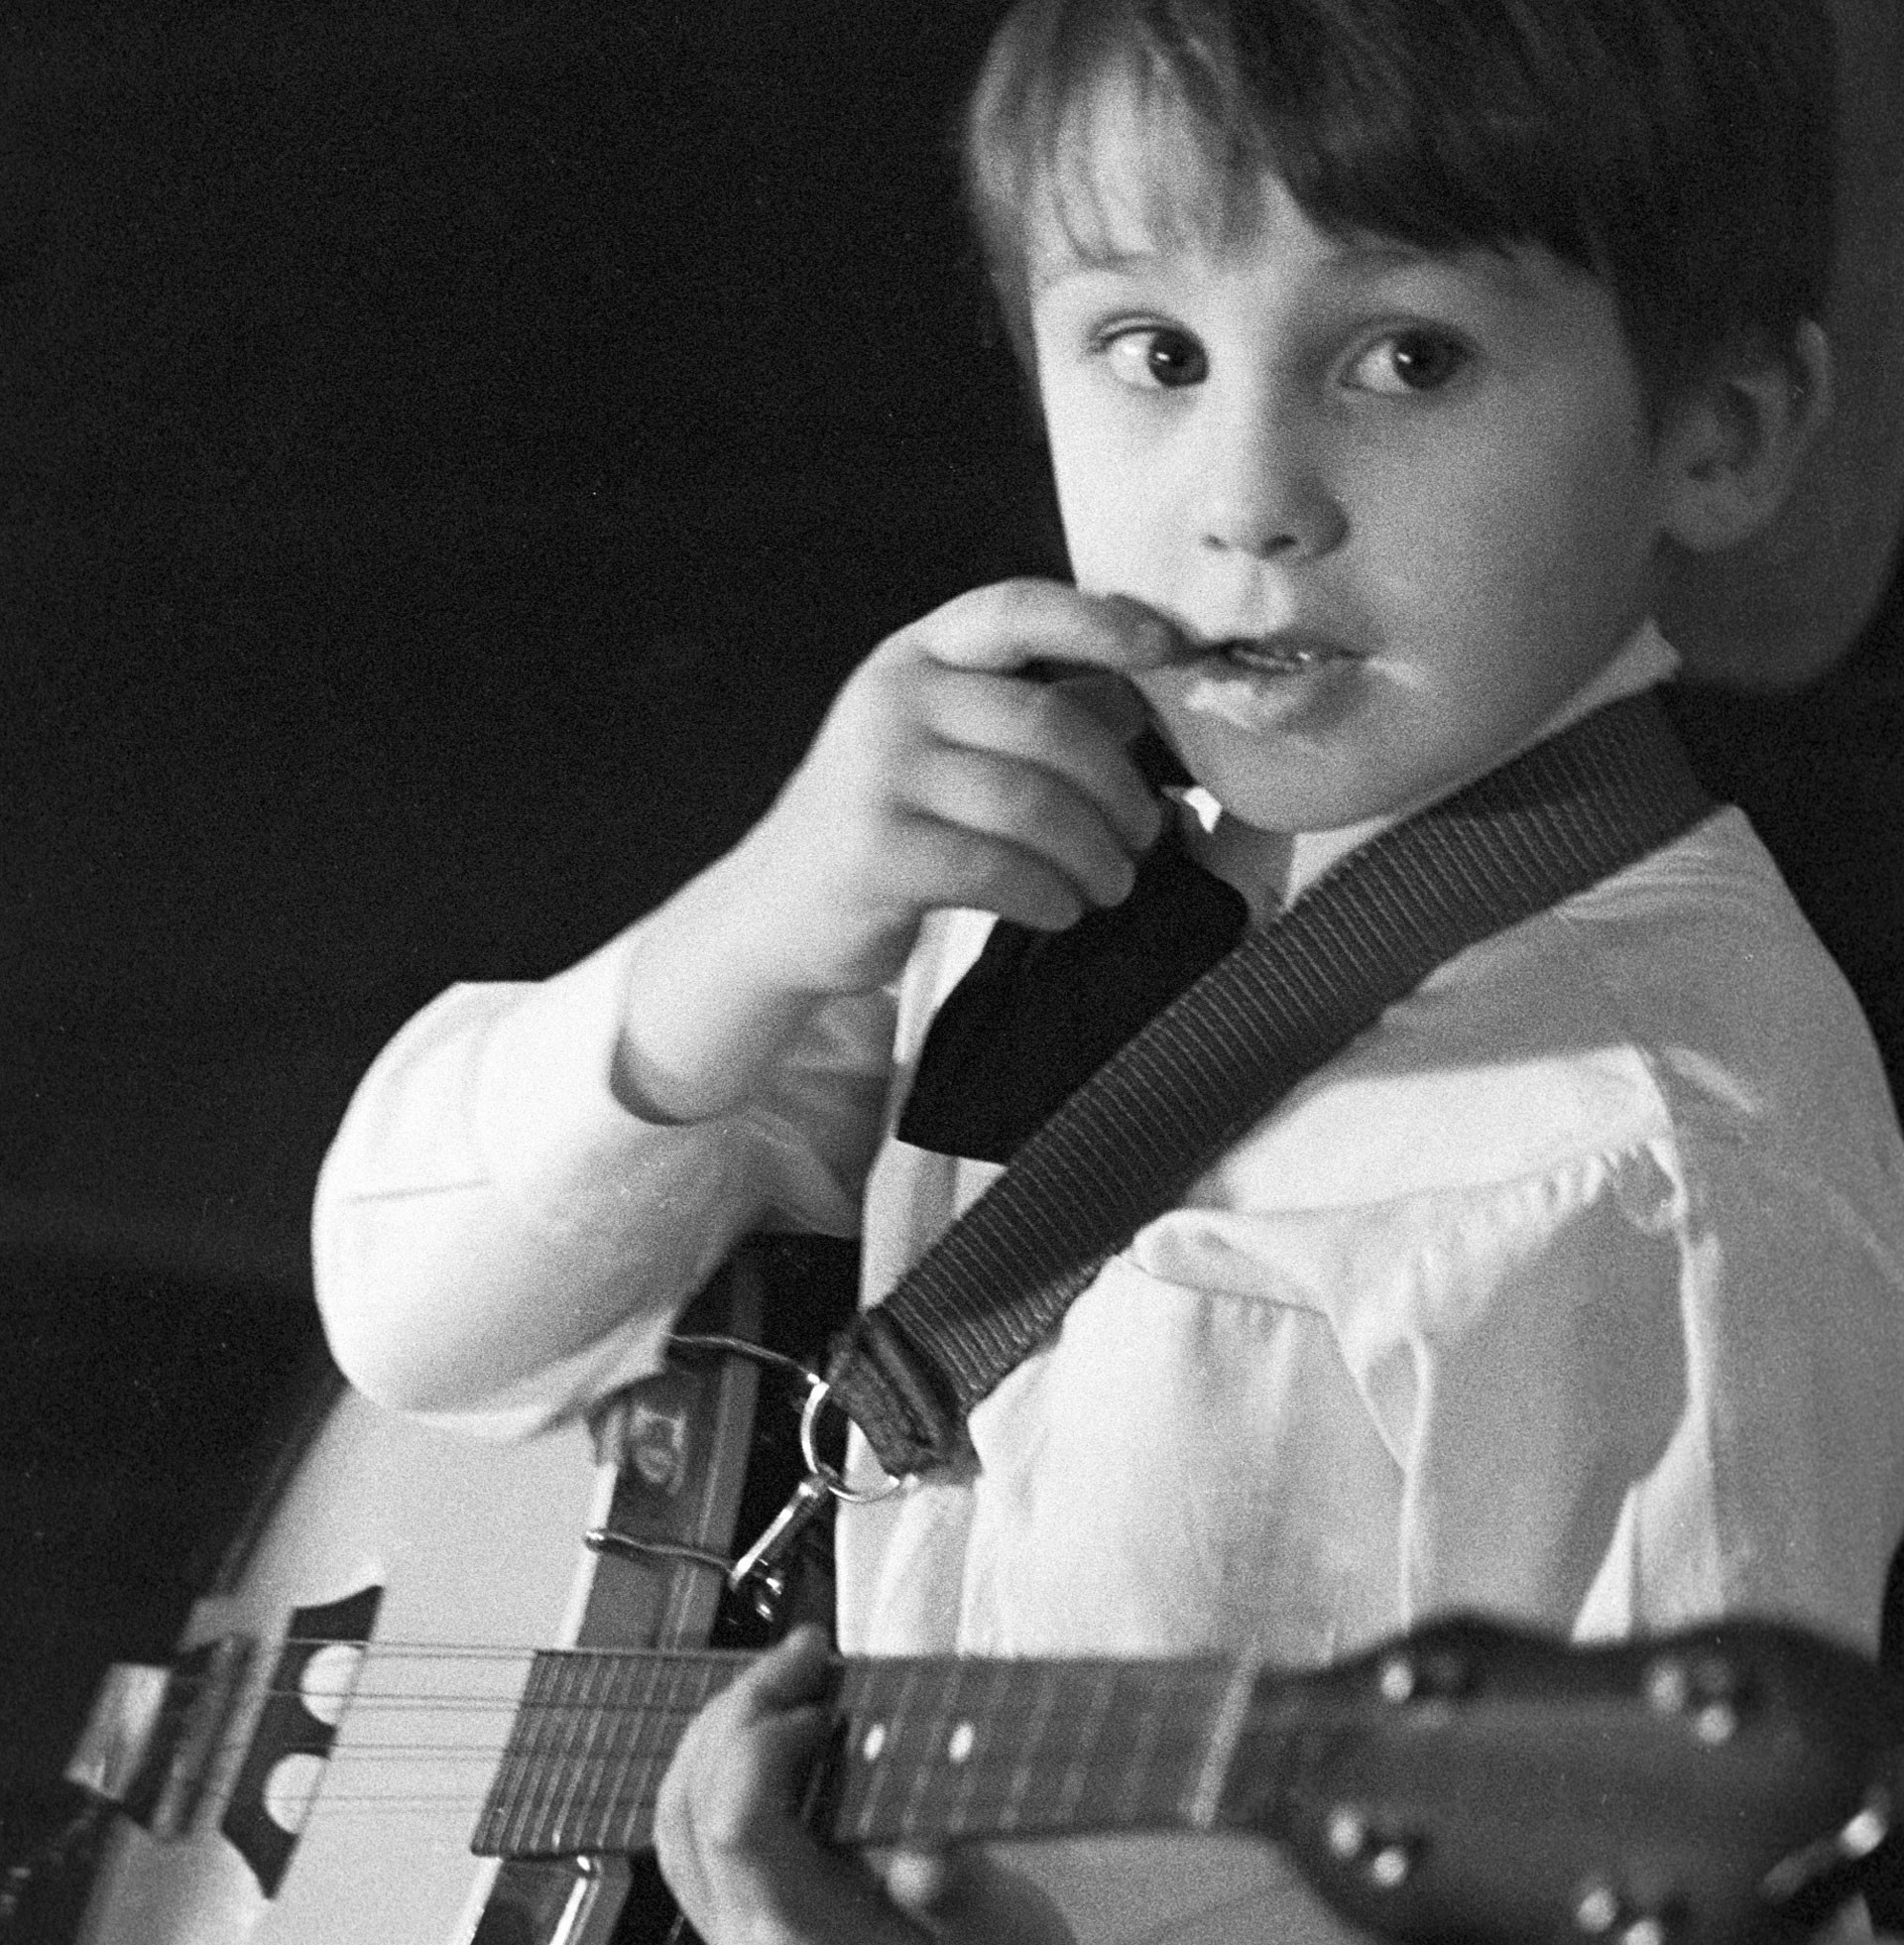 Младший из братьев Овечкиных играет на банджо. Фото © РИА "Новости" / Пётр Малиновский